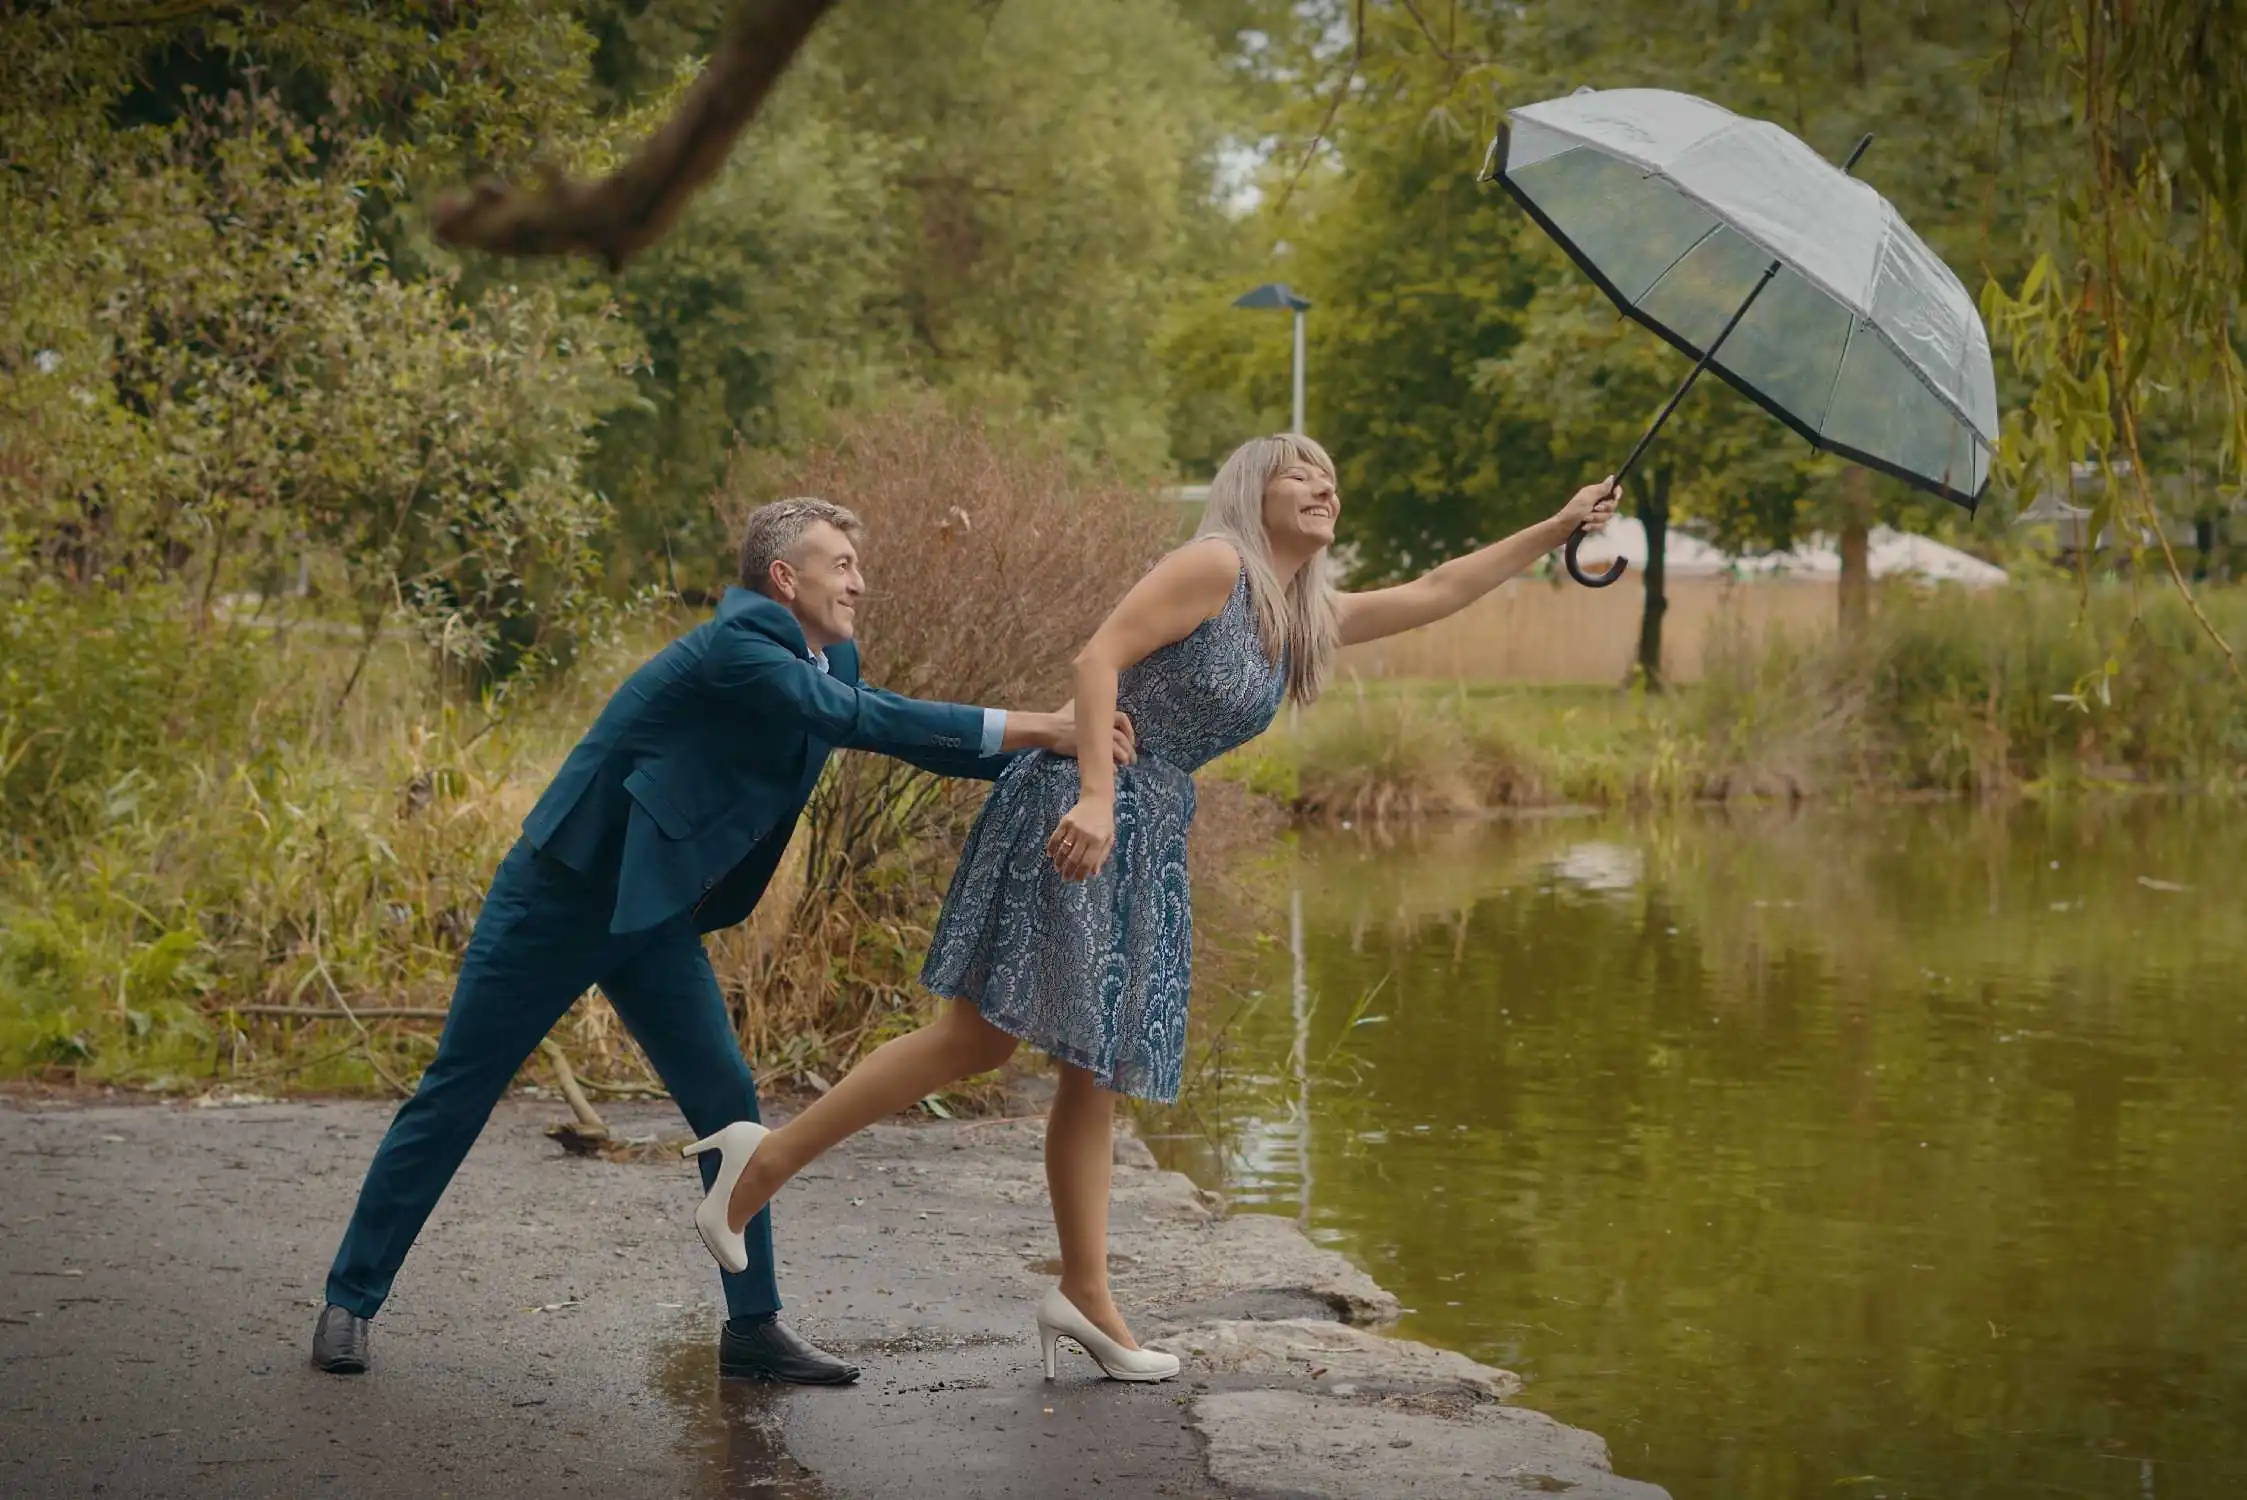 Fotos im Park Crailsheim, ein Paar mit dem Regenschirm